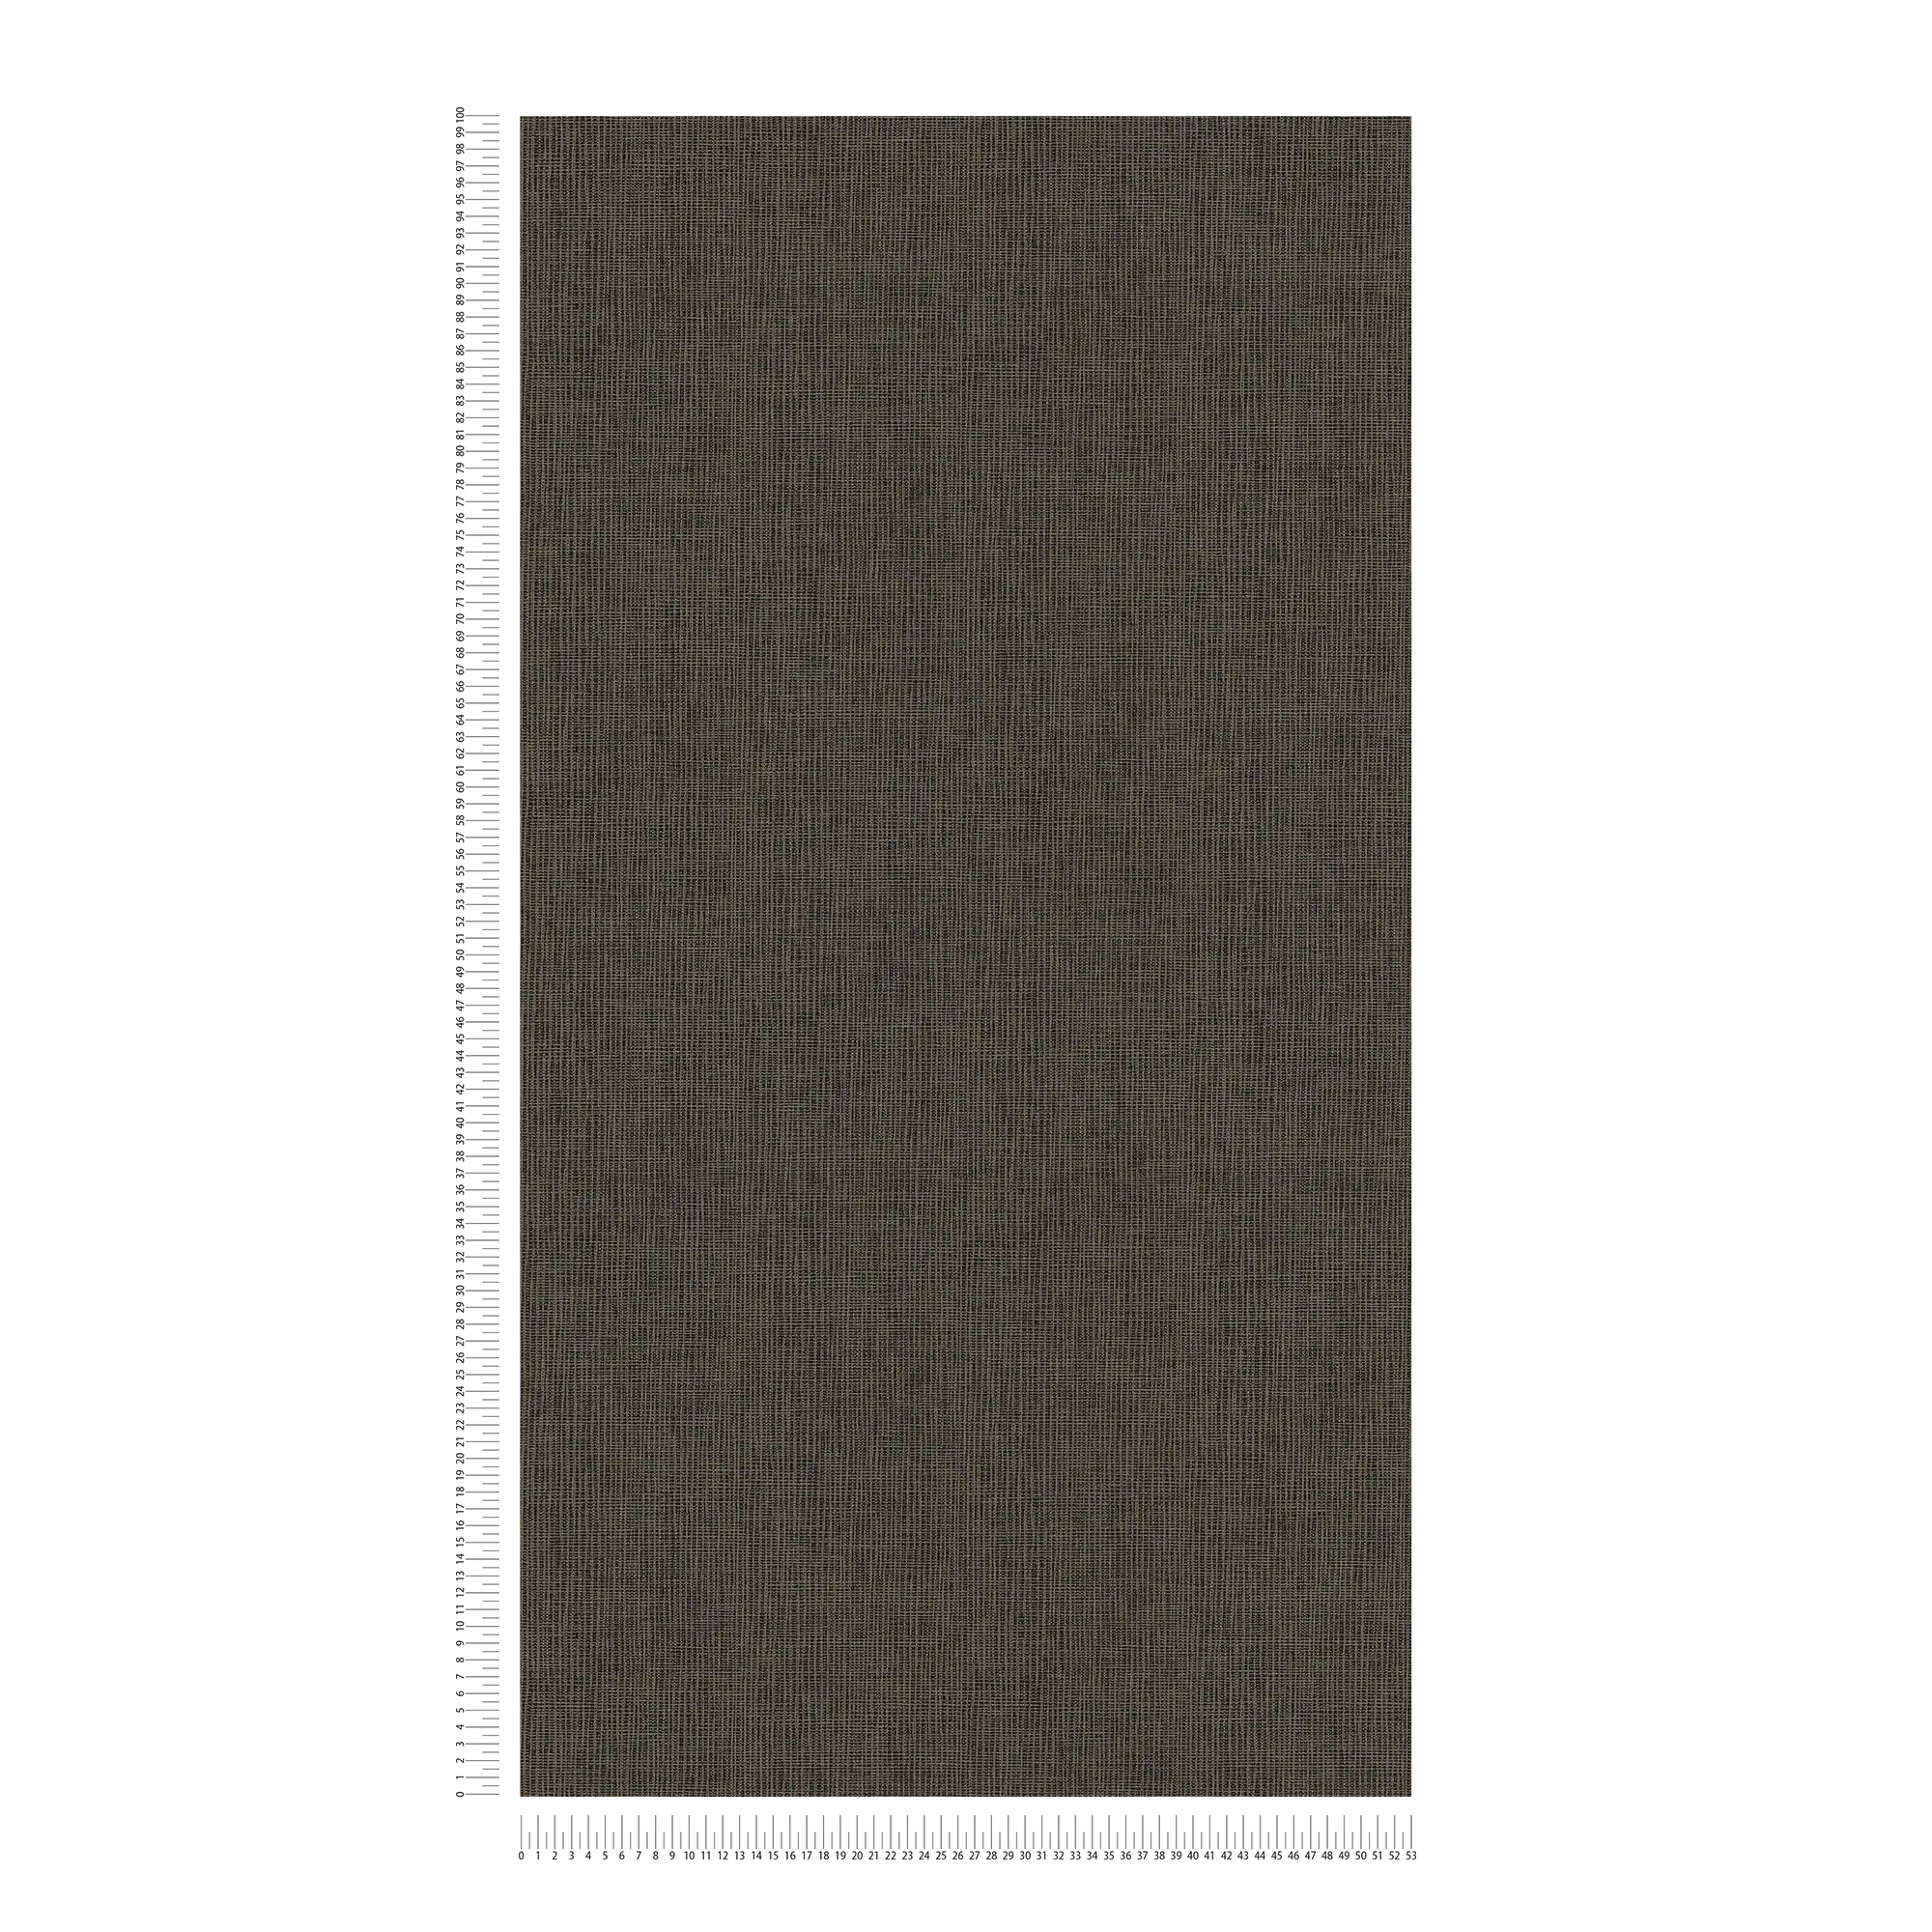             Carta da parati in tessuto non tessuto marrone con dettagli grigi e oro - blu, grigio, argento
        